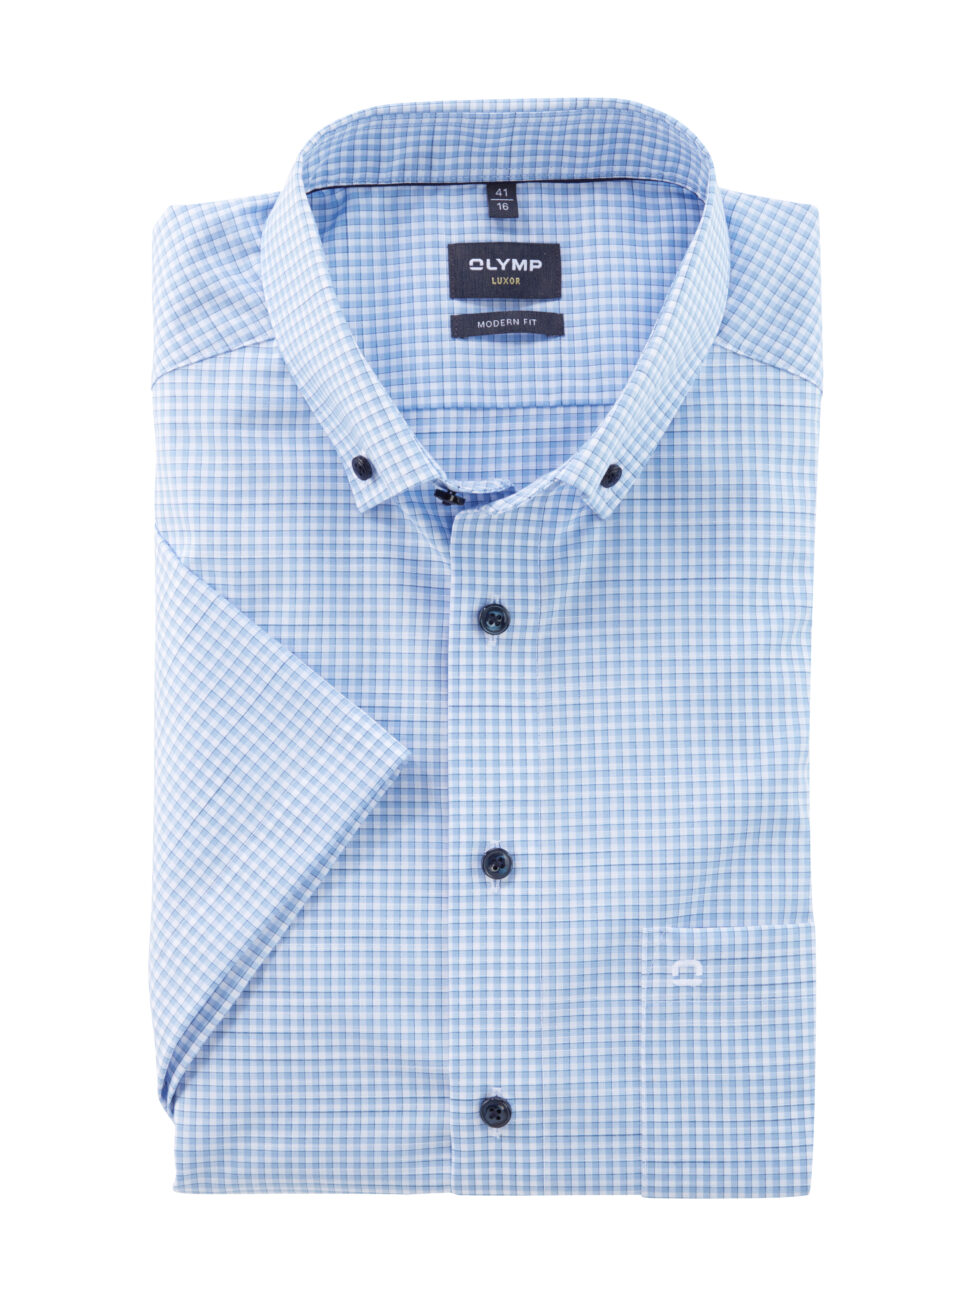 Koszula OLYMP Luxor, modern fit, Błękitna krateczka/  Button-down / 12533211 krótki rękaw